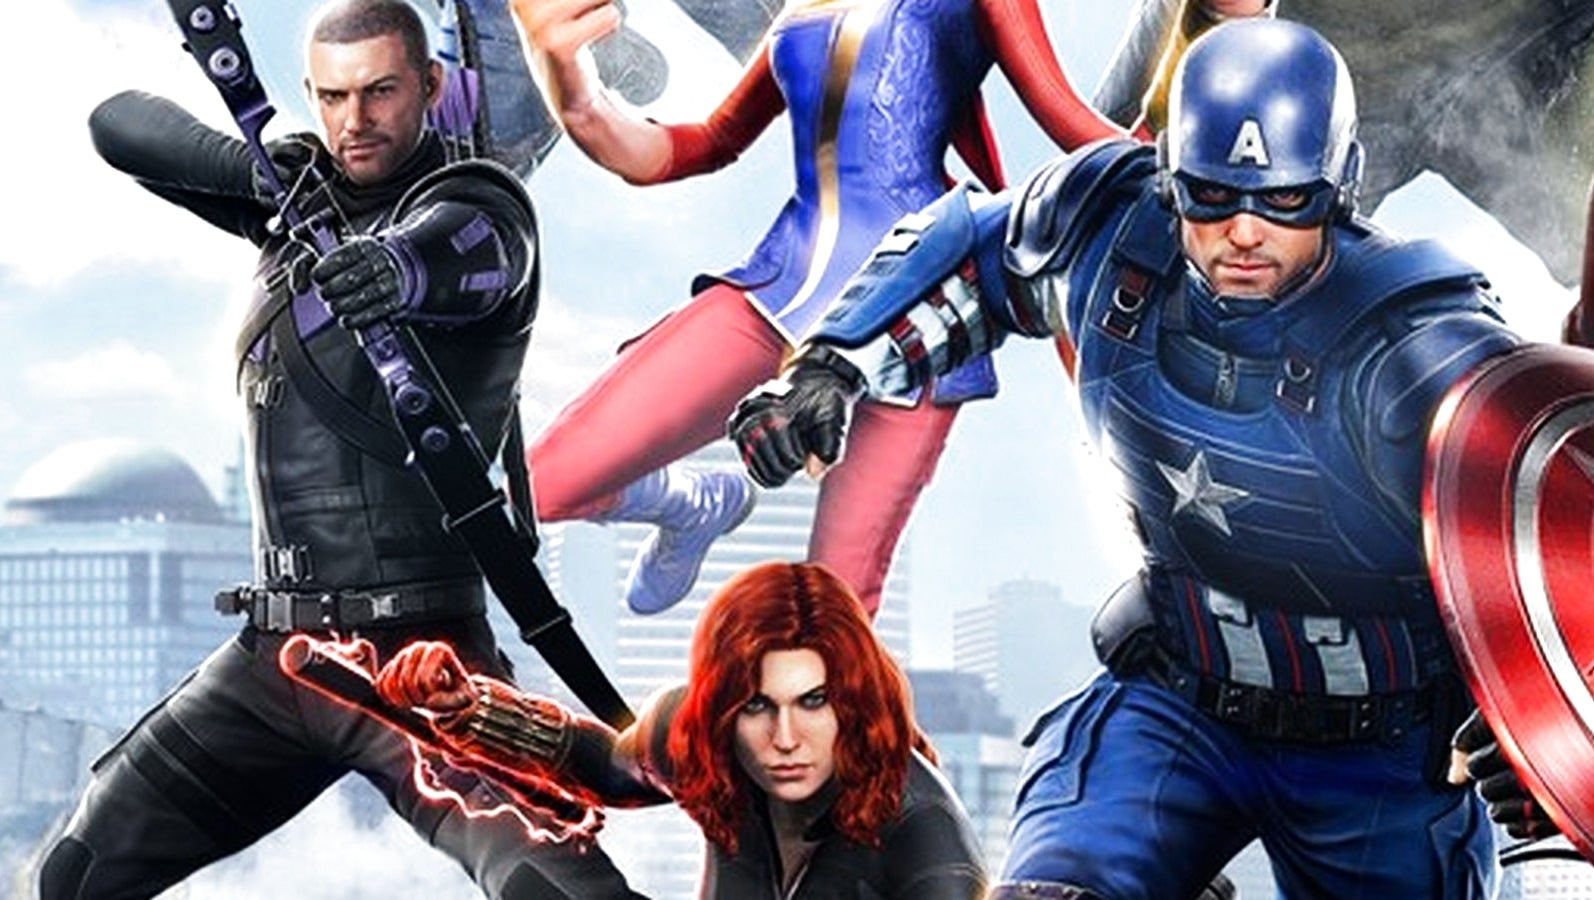 Bilder zu Marvel's Avengers verkauft jetzt XP-Boosts an seine Spieler - und bricht damit frühere Versprechen